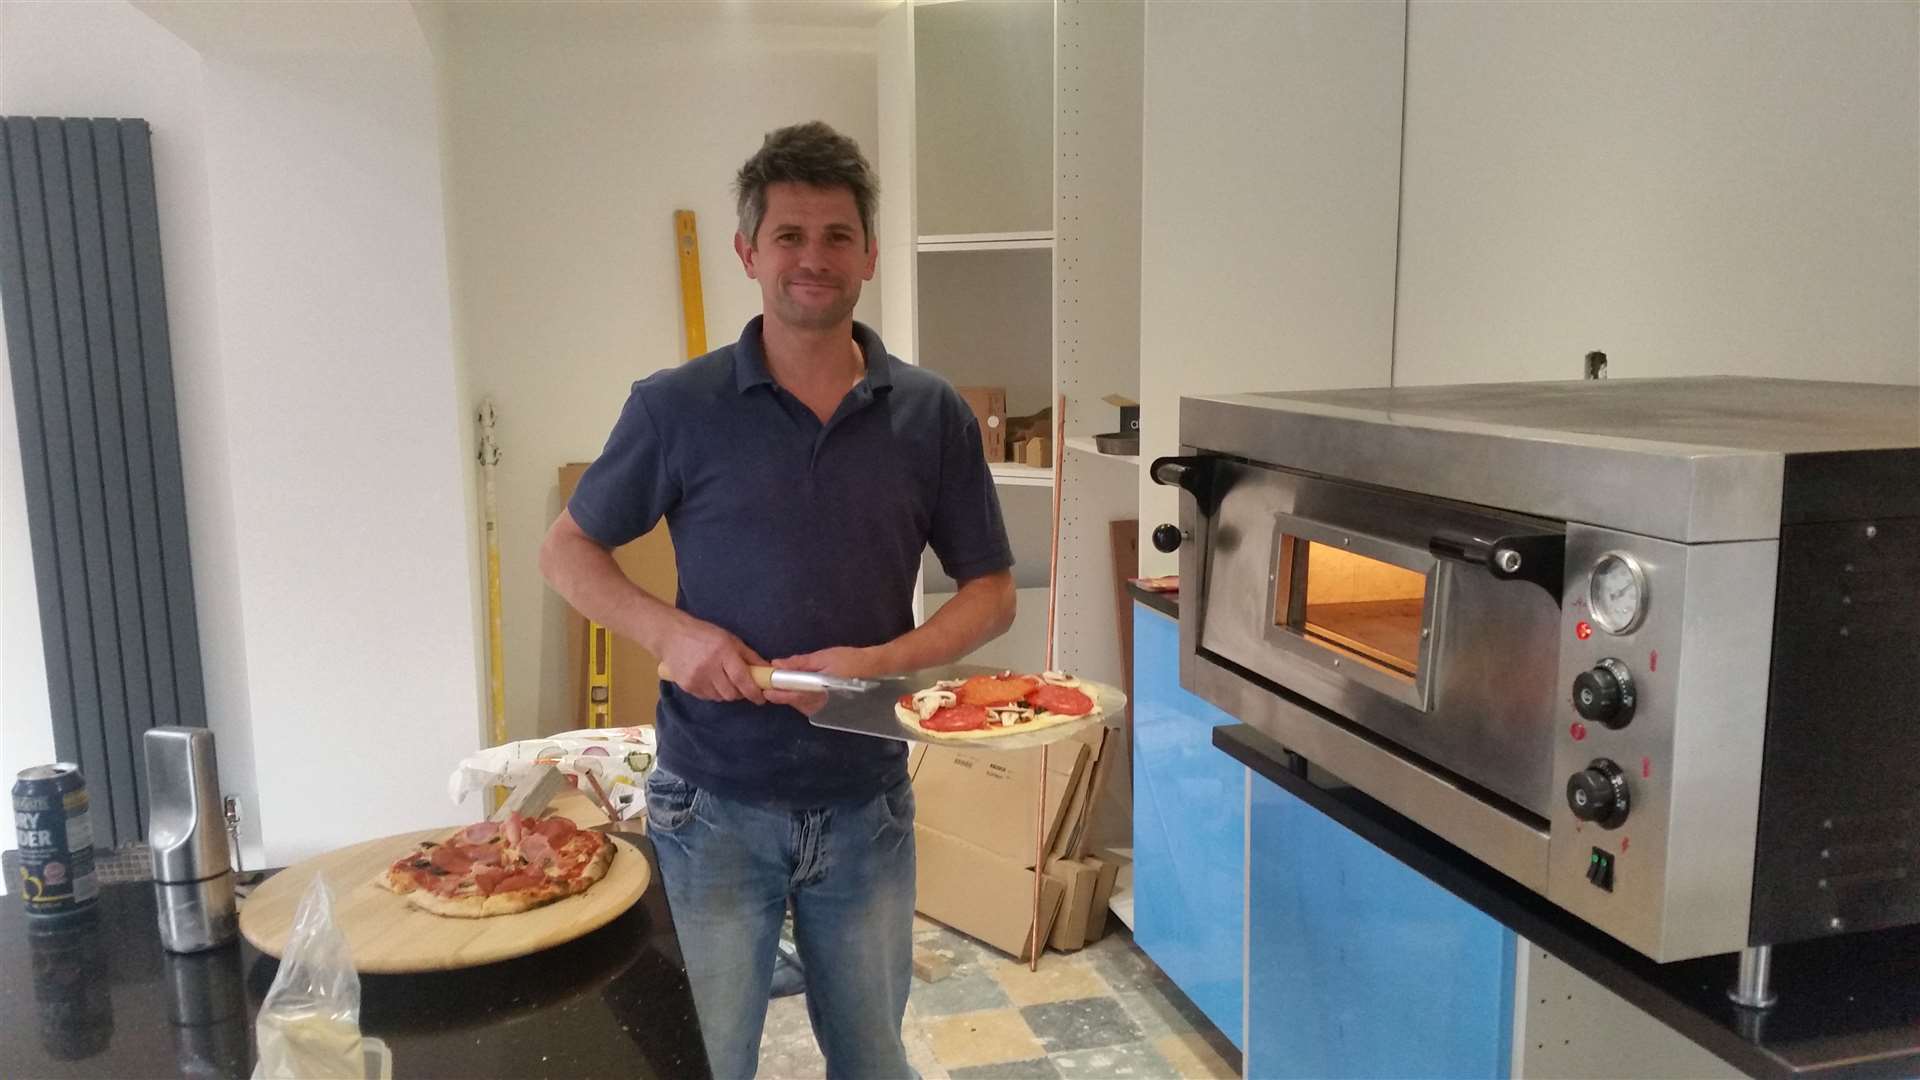 Ian Parris wants to open pizza takeaway